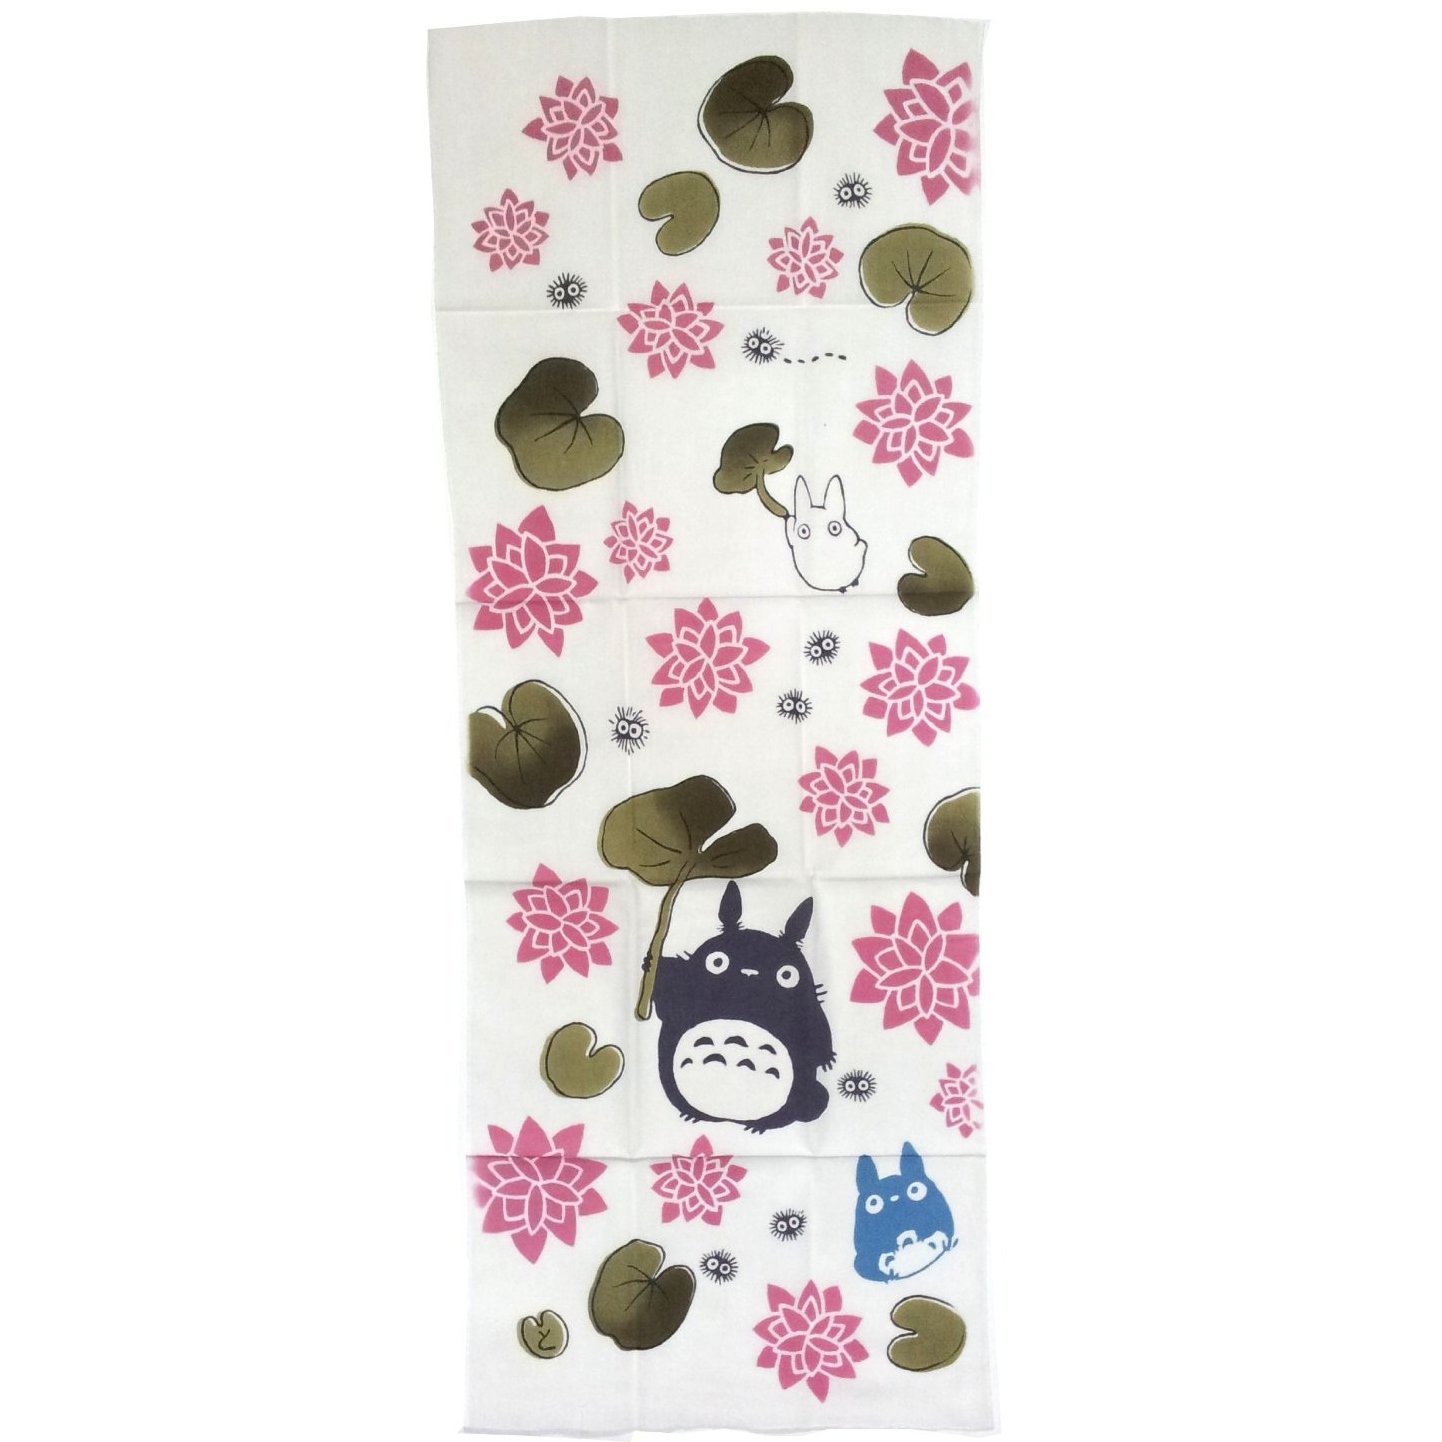 Towel Tenugui 33x90cm - Made in JAPAN - Handmade Japanese Dyed - Water Lily - Totoro Ghibli 2013